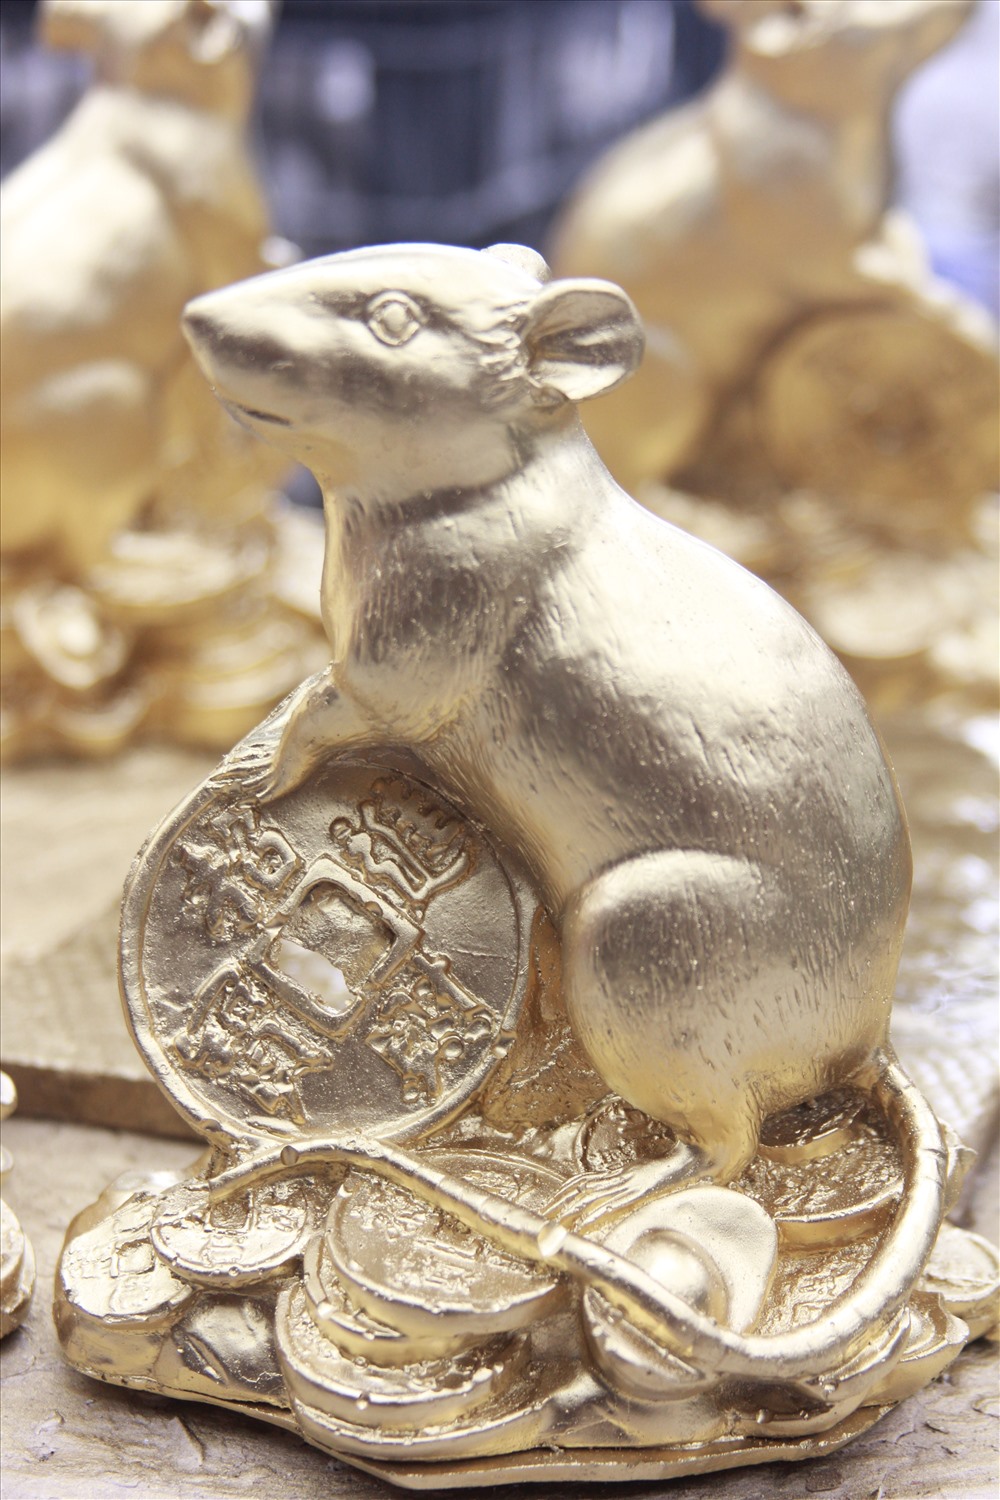 Giá mỗi mẫu chuột dạng thô chỉ gần 10.000 đồng. Còn đối với chuột mạ vàng sẽ có giá gấp đôi hoặc gấp 3 tùy theo bán buôn và bán lẻ.